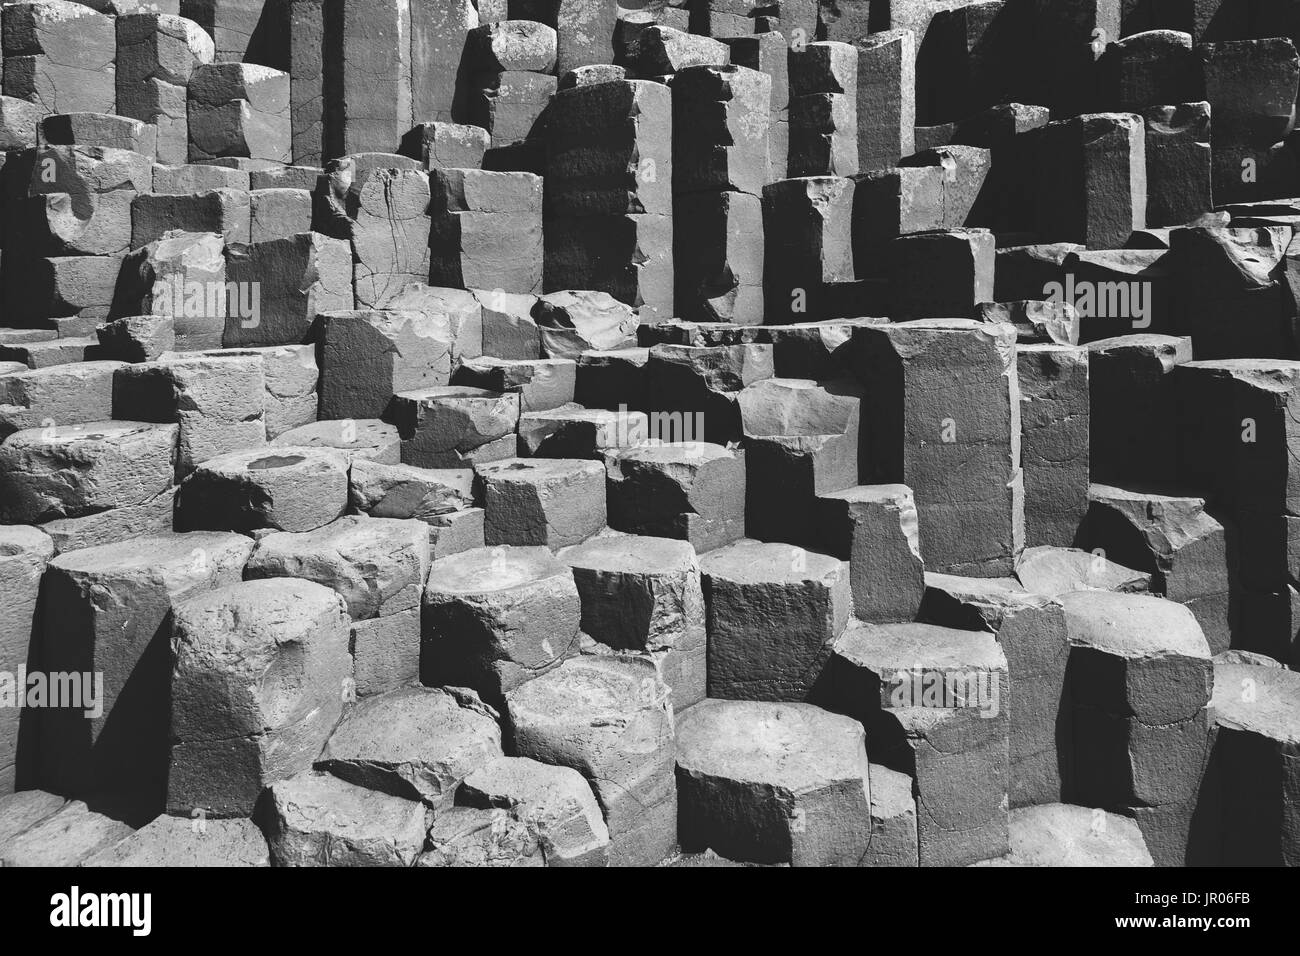 Lit de roches volcaniques basaltiques hexagonales colonnes à la Giant's Causeway Coast - Le Site du patrimoine mondial naturel de l'Irlande du Nord d'Antrim Bushmills Banque D'Images